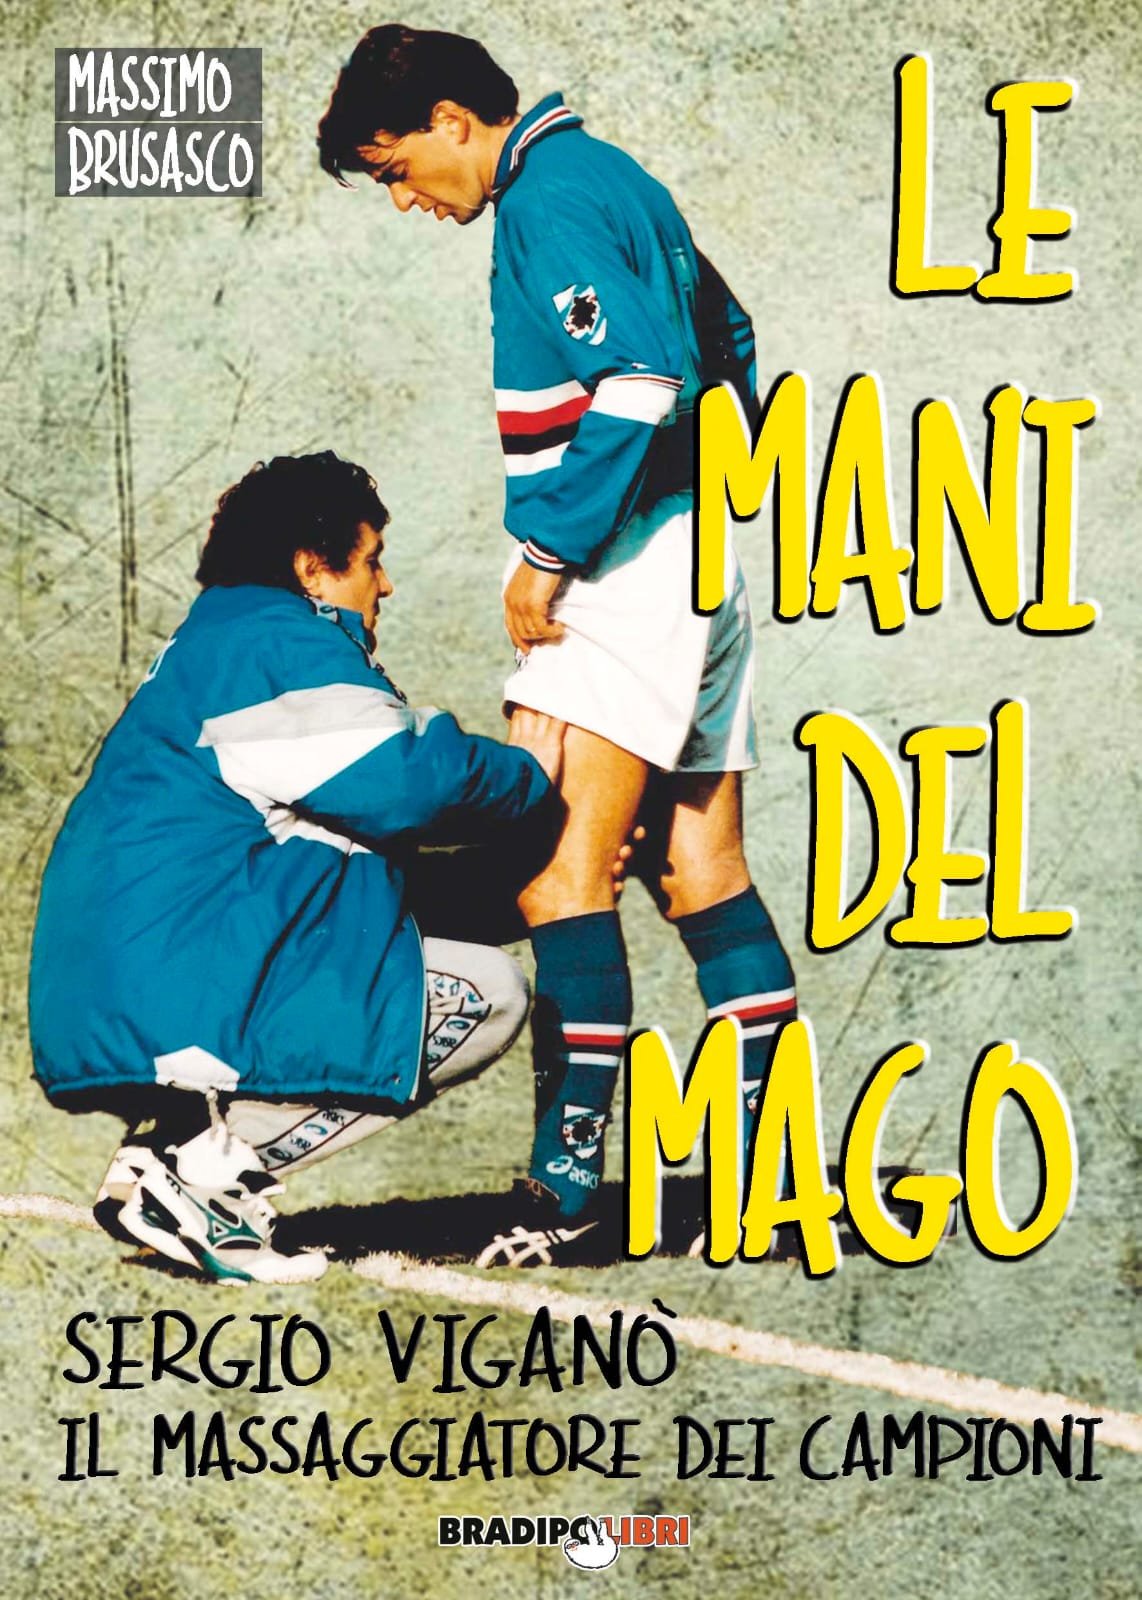 In TV la storia di Mancini che fu a un passo dalla Juve e Viganò con “Le mani del mago”